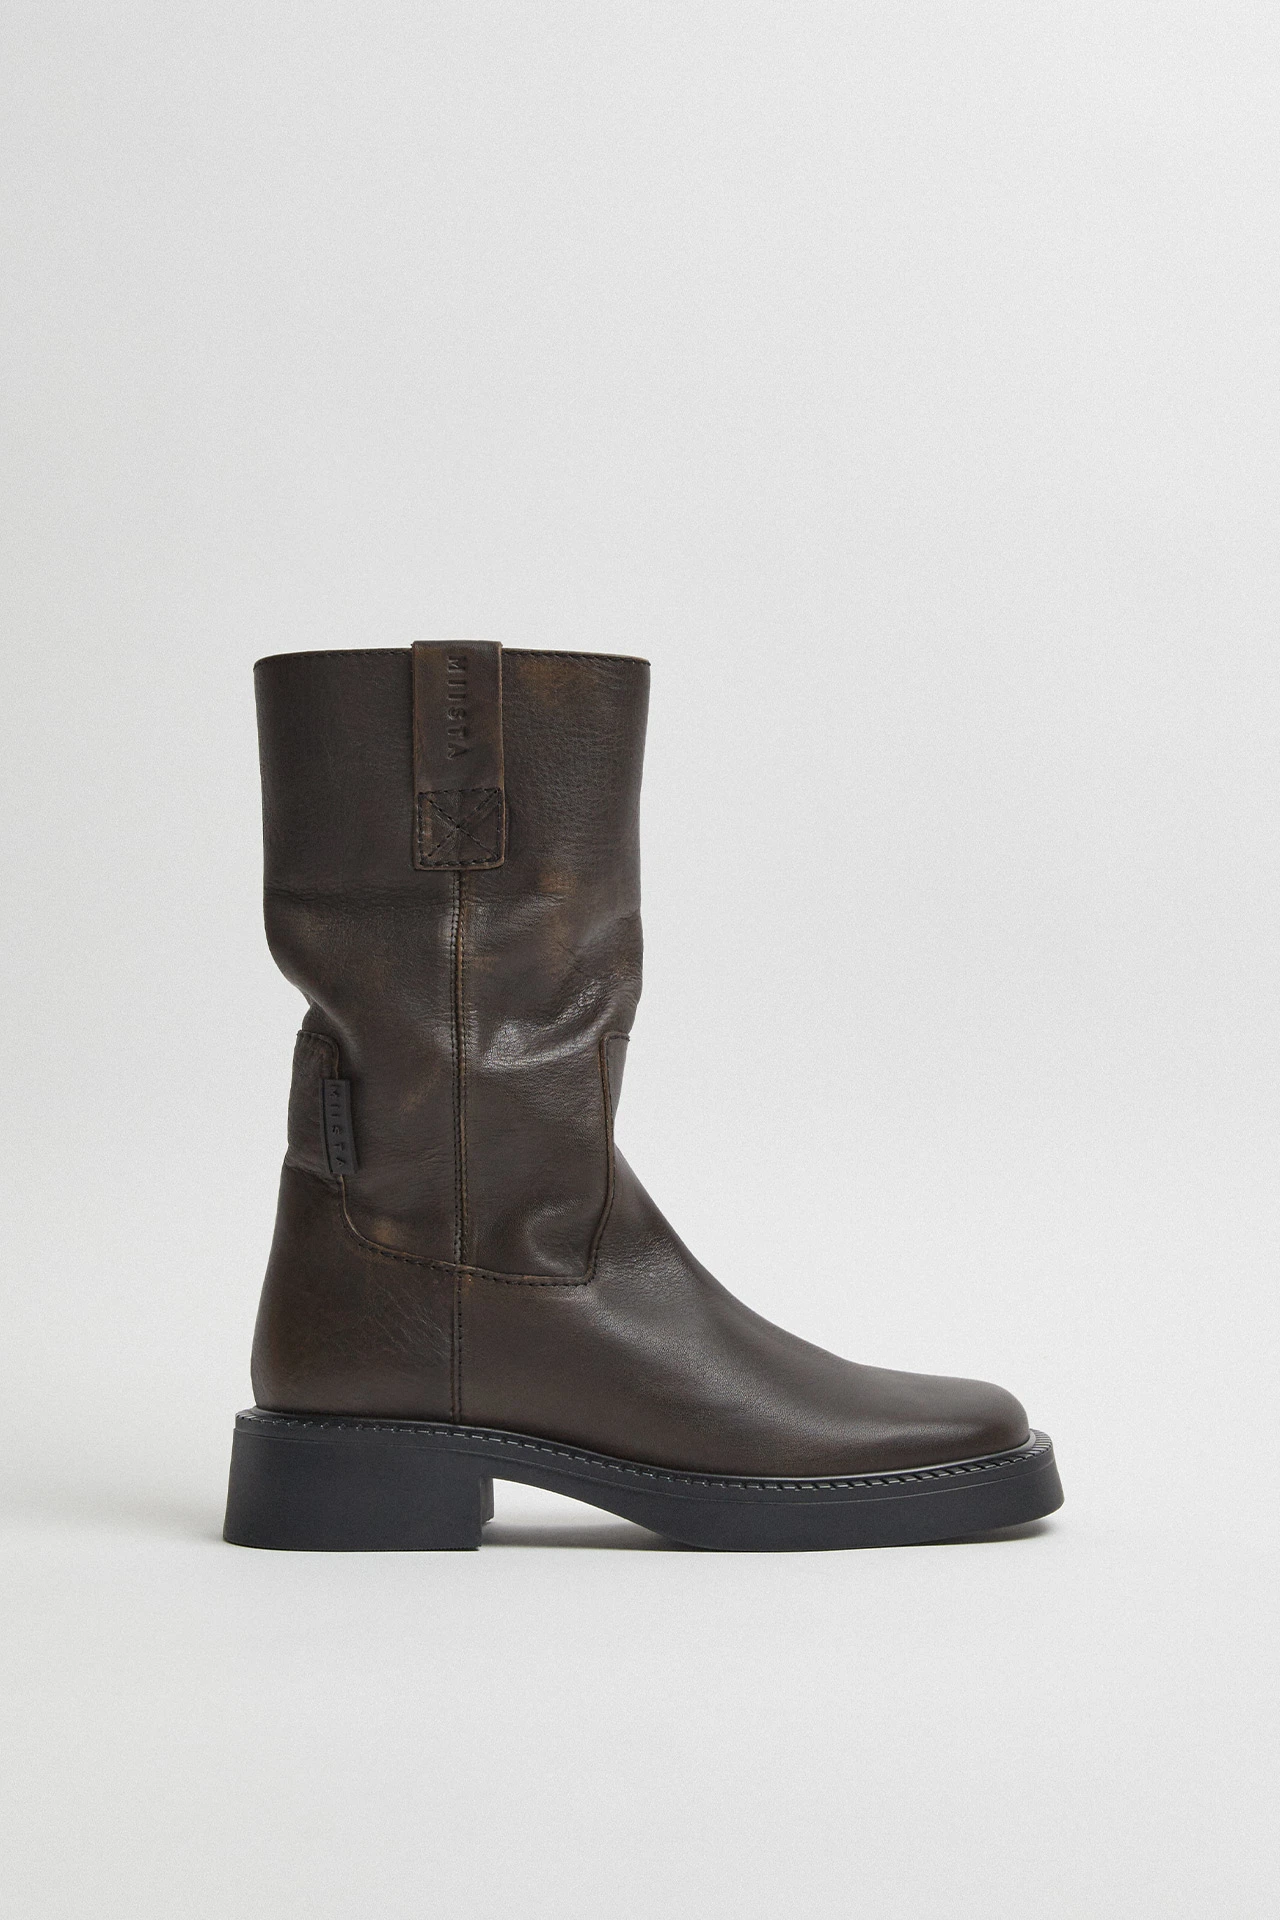 E8-aron-brown-boots-01